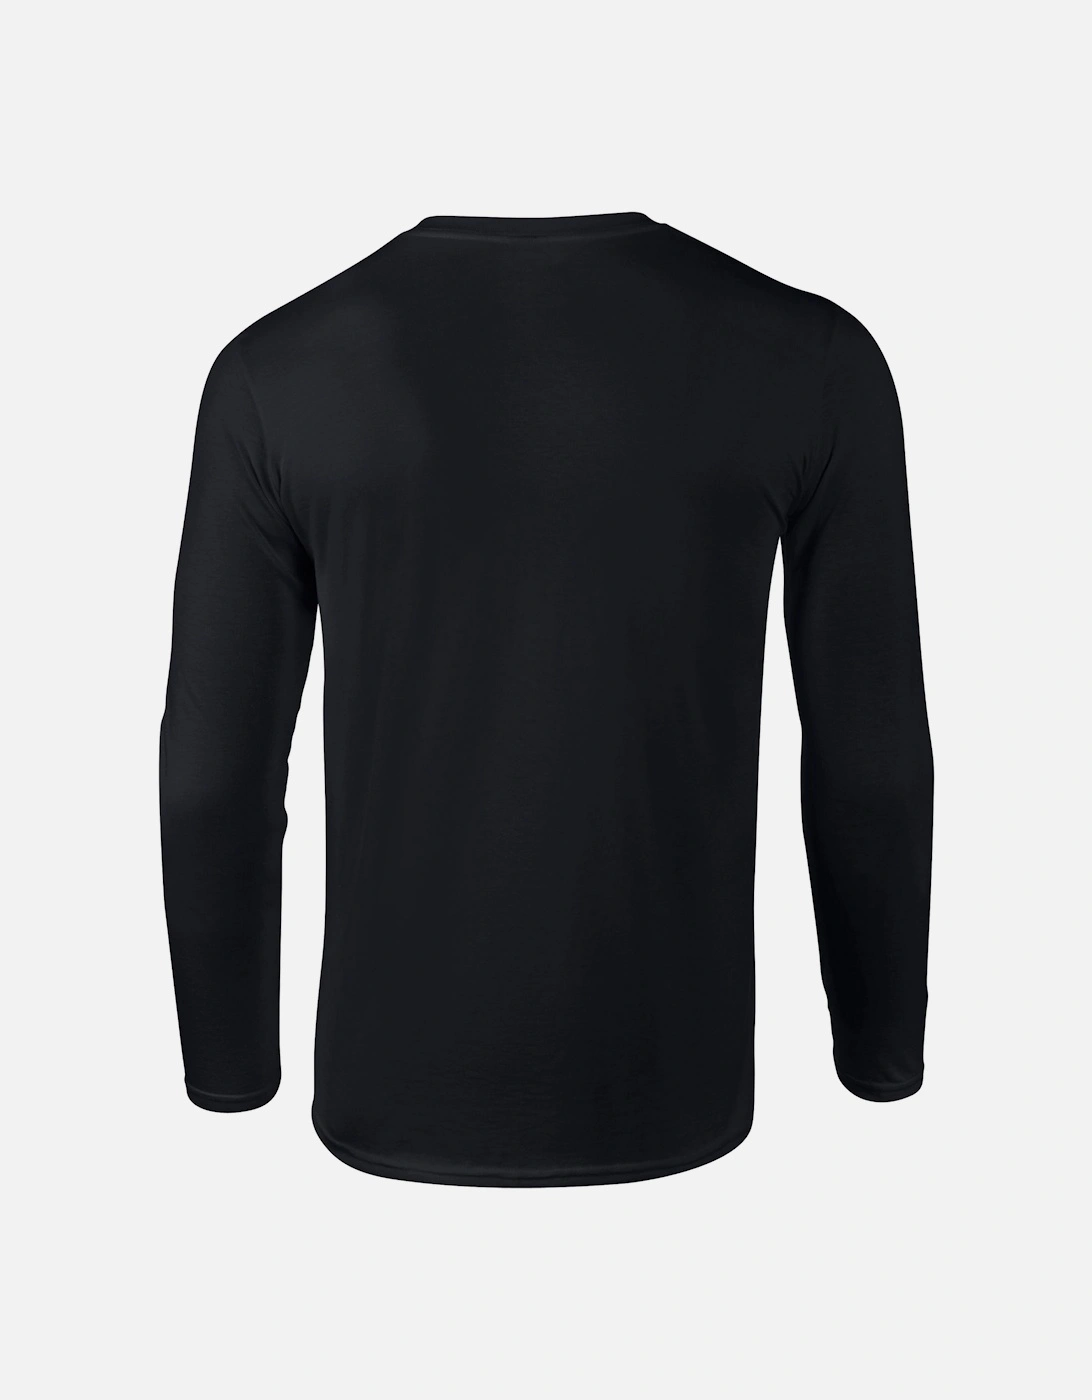 Unisex Adult Softstyle Plain Long-Sleeved T-Shirt